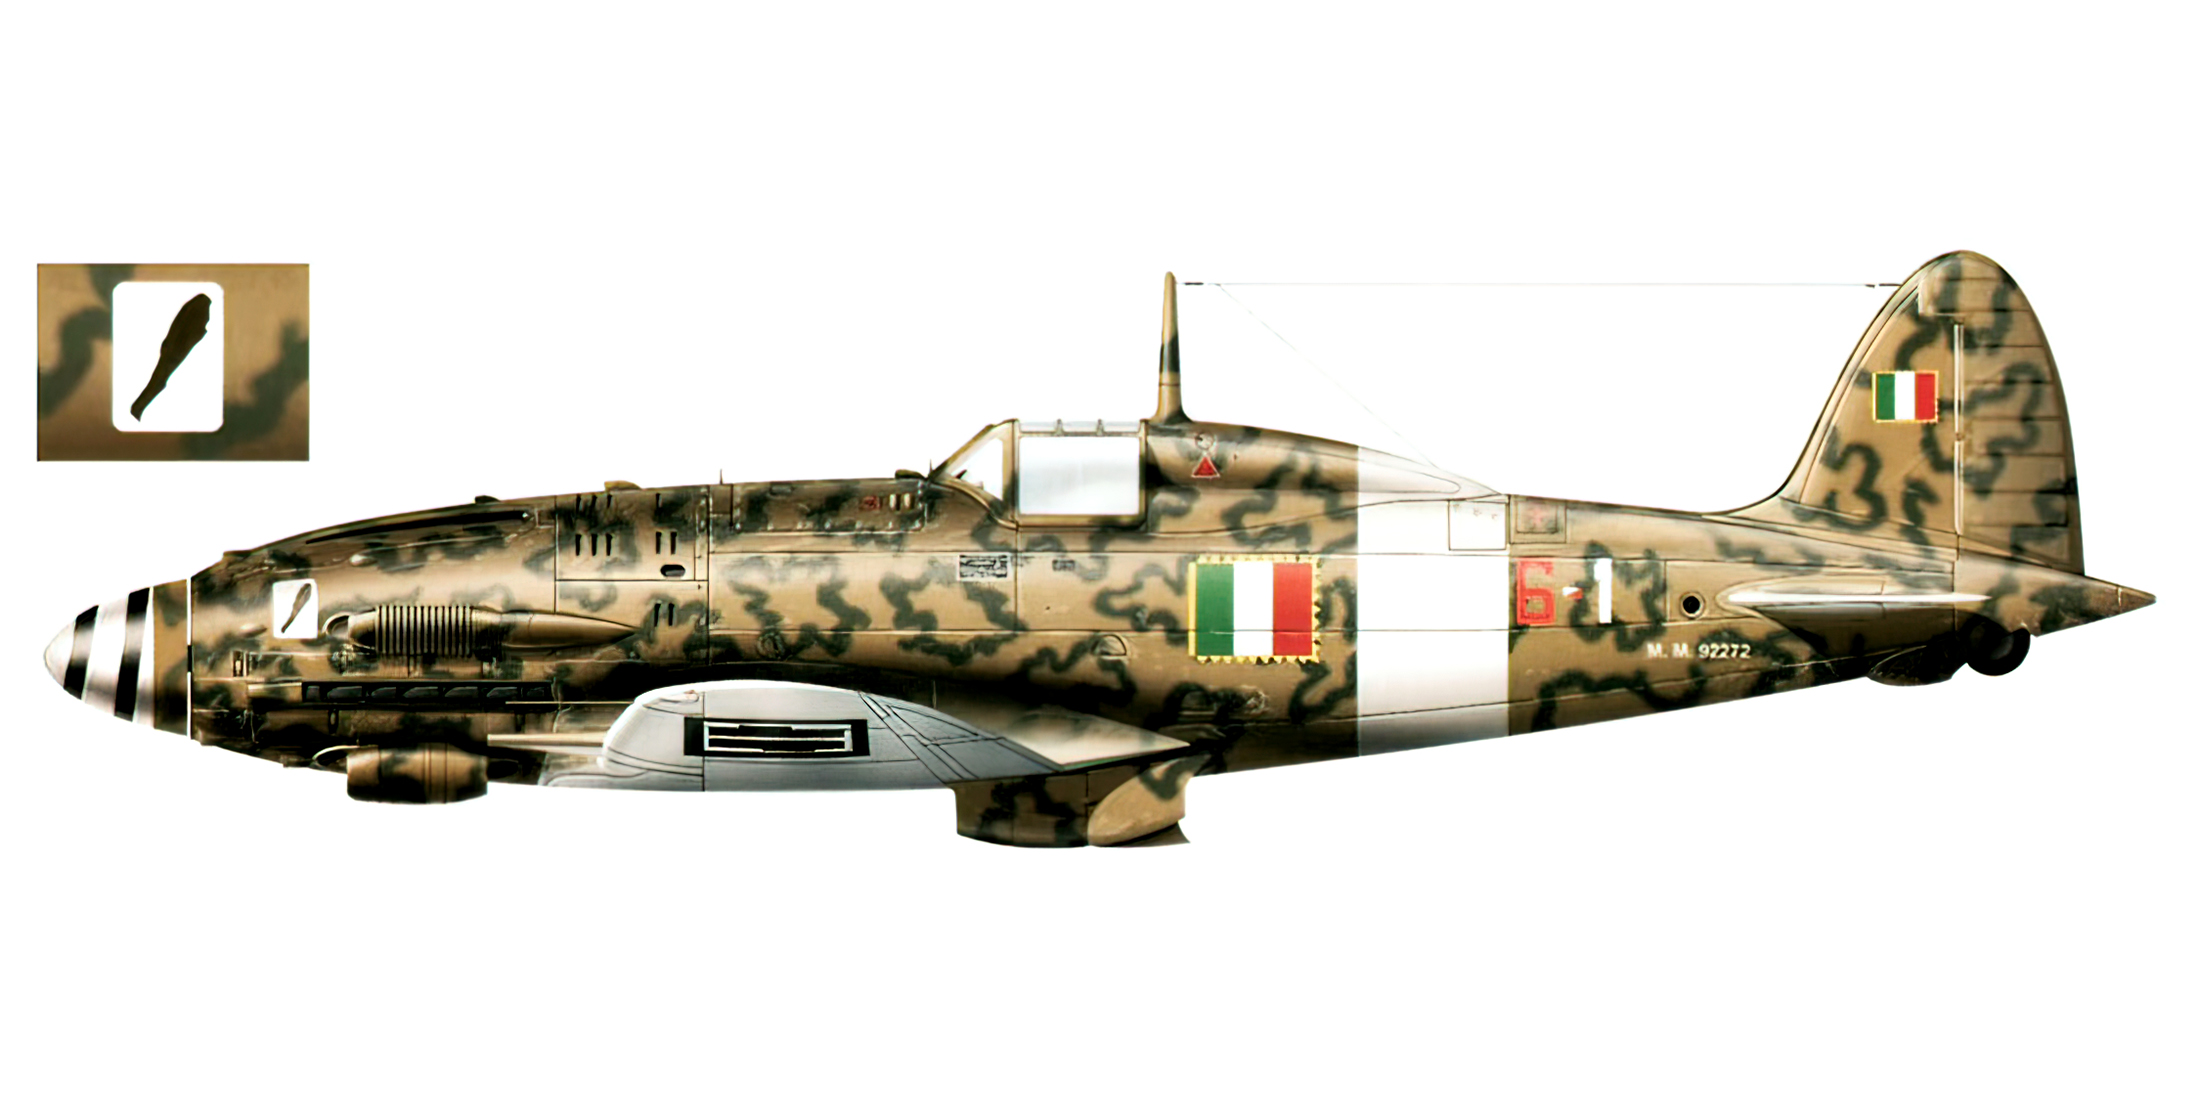 ANR Macchi MC205 Veltro 1 Gruppo Aeronautica Nazionale Repubblicana 6 1 MM92272 Northern Italy 1943 0A